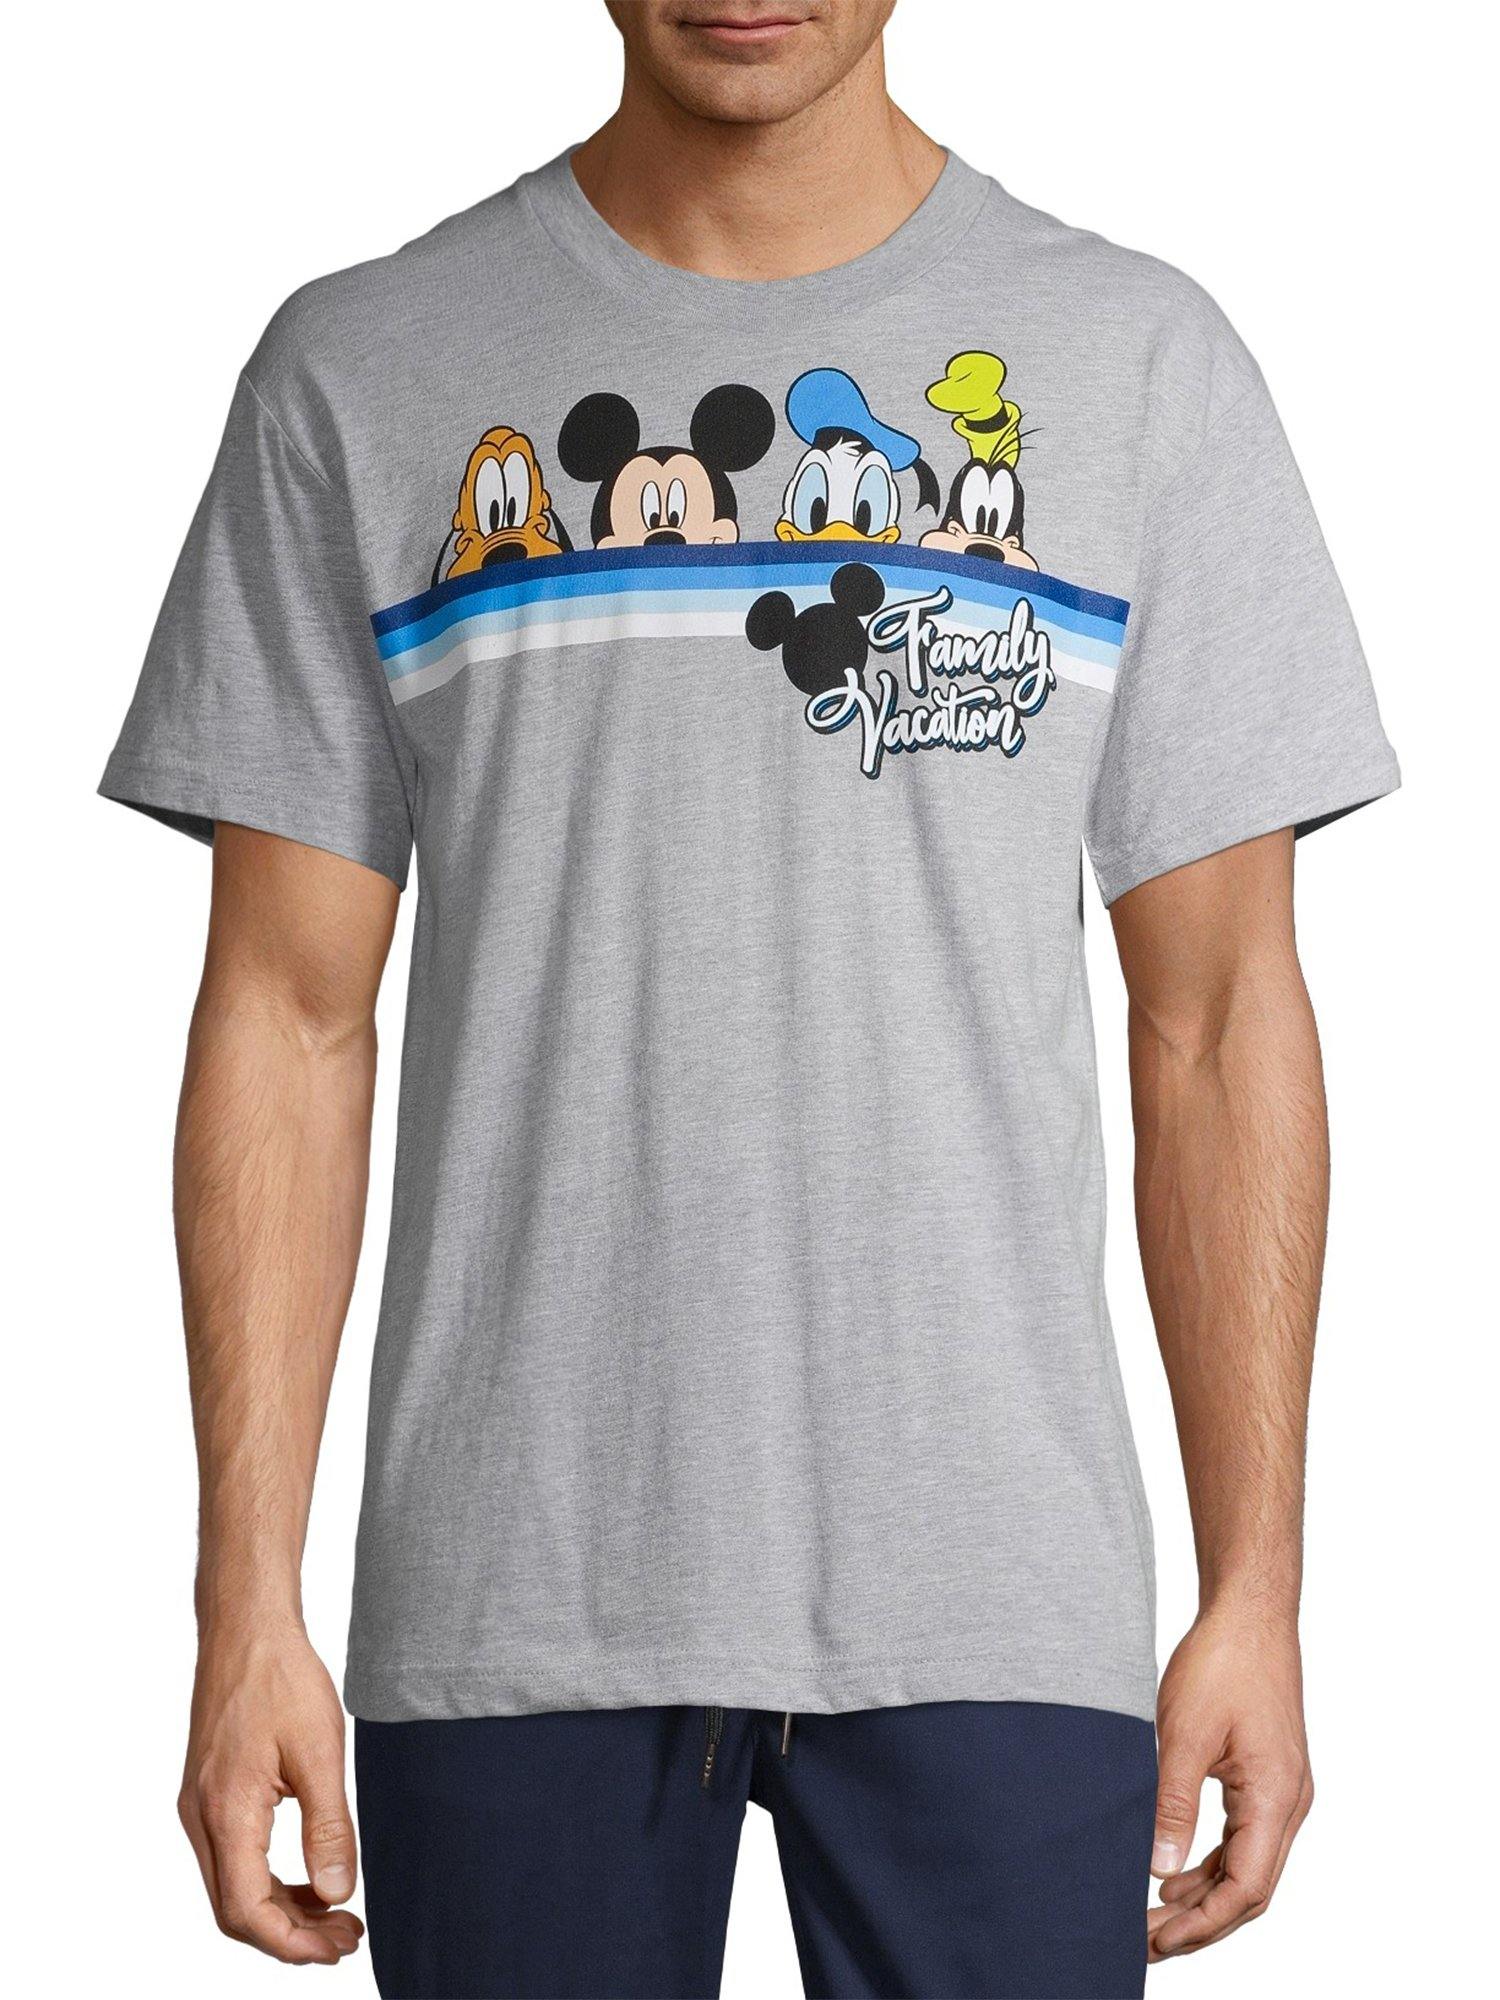 Disney Adult T-Shirt Vacation Pals, Gray